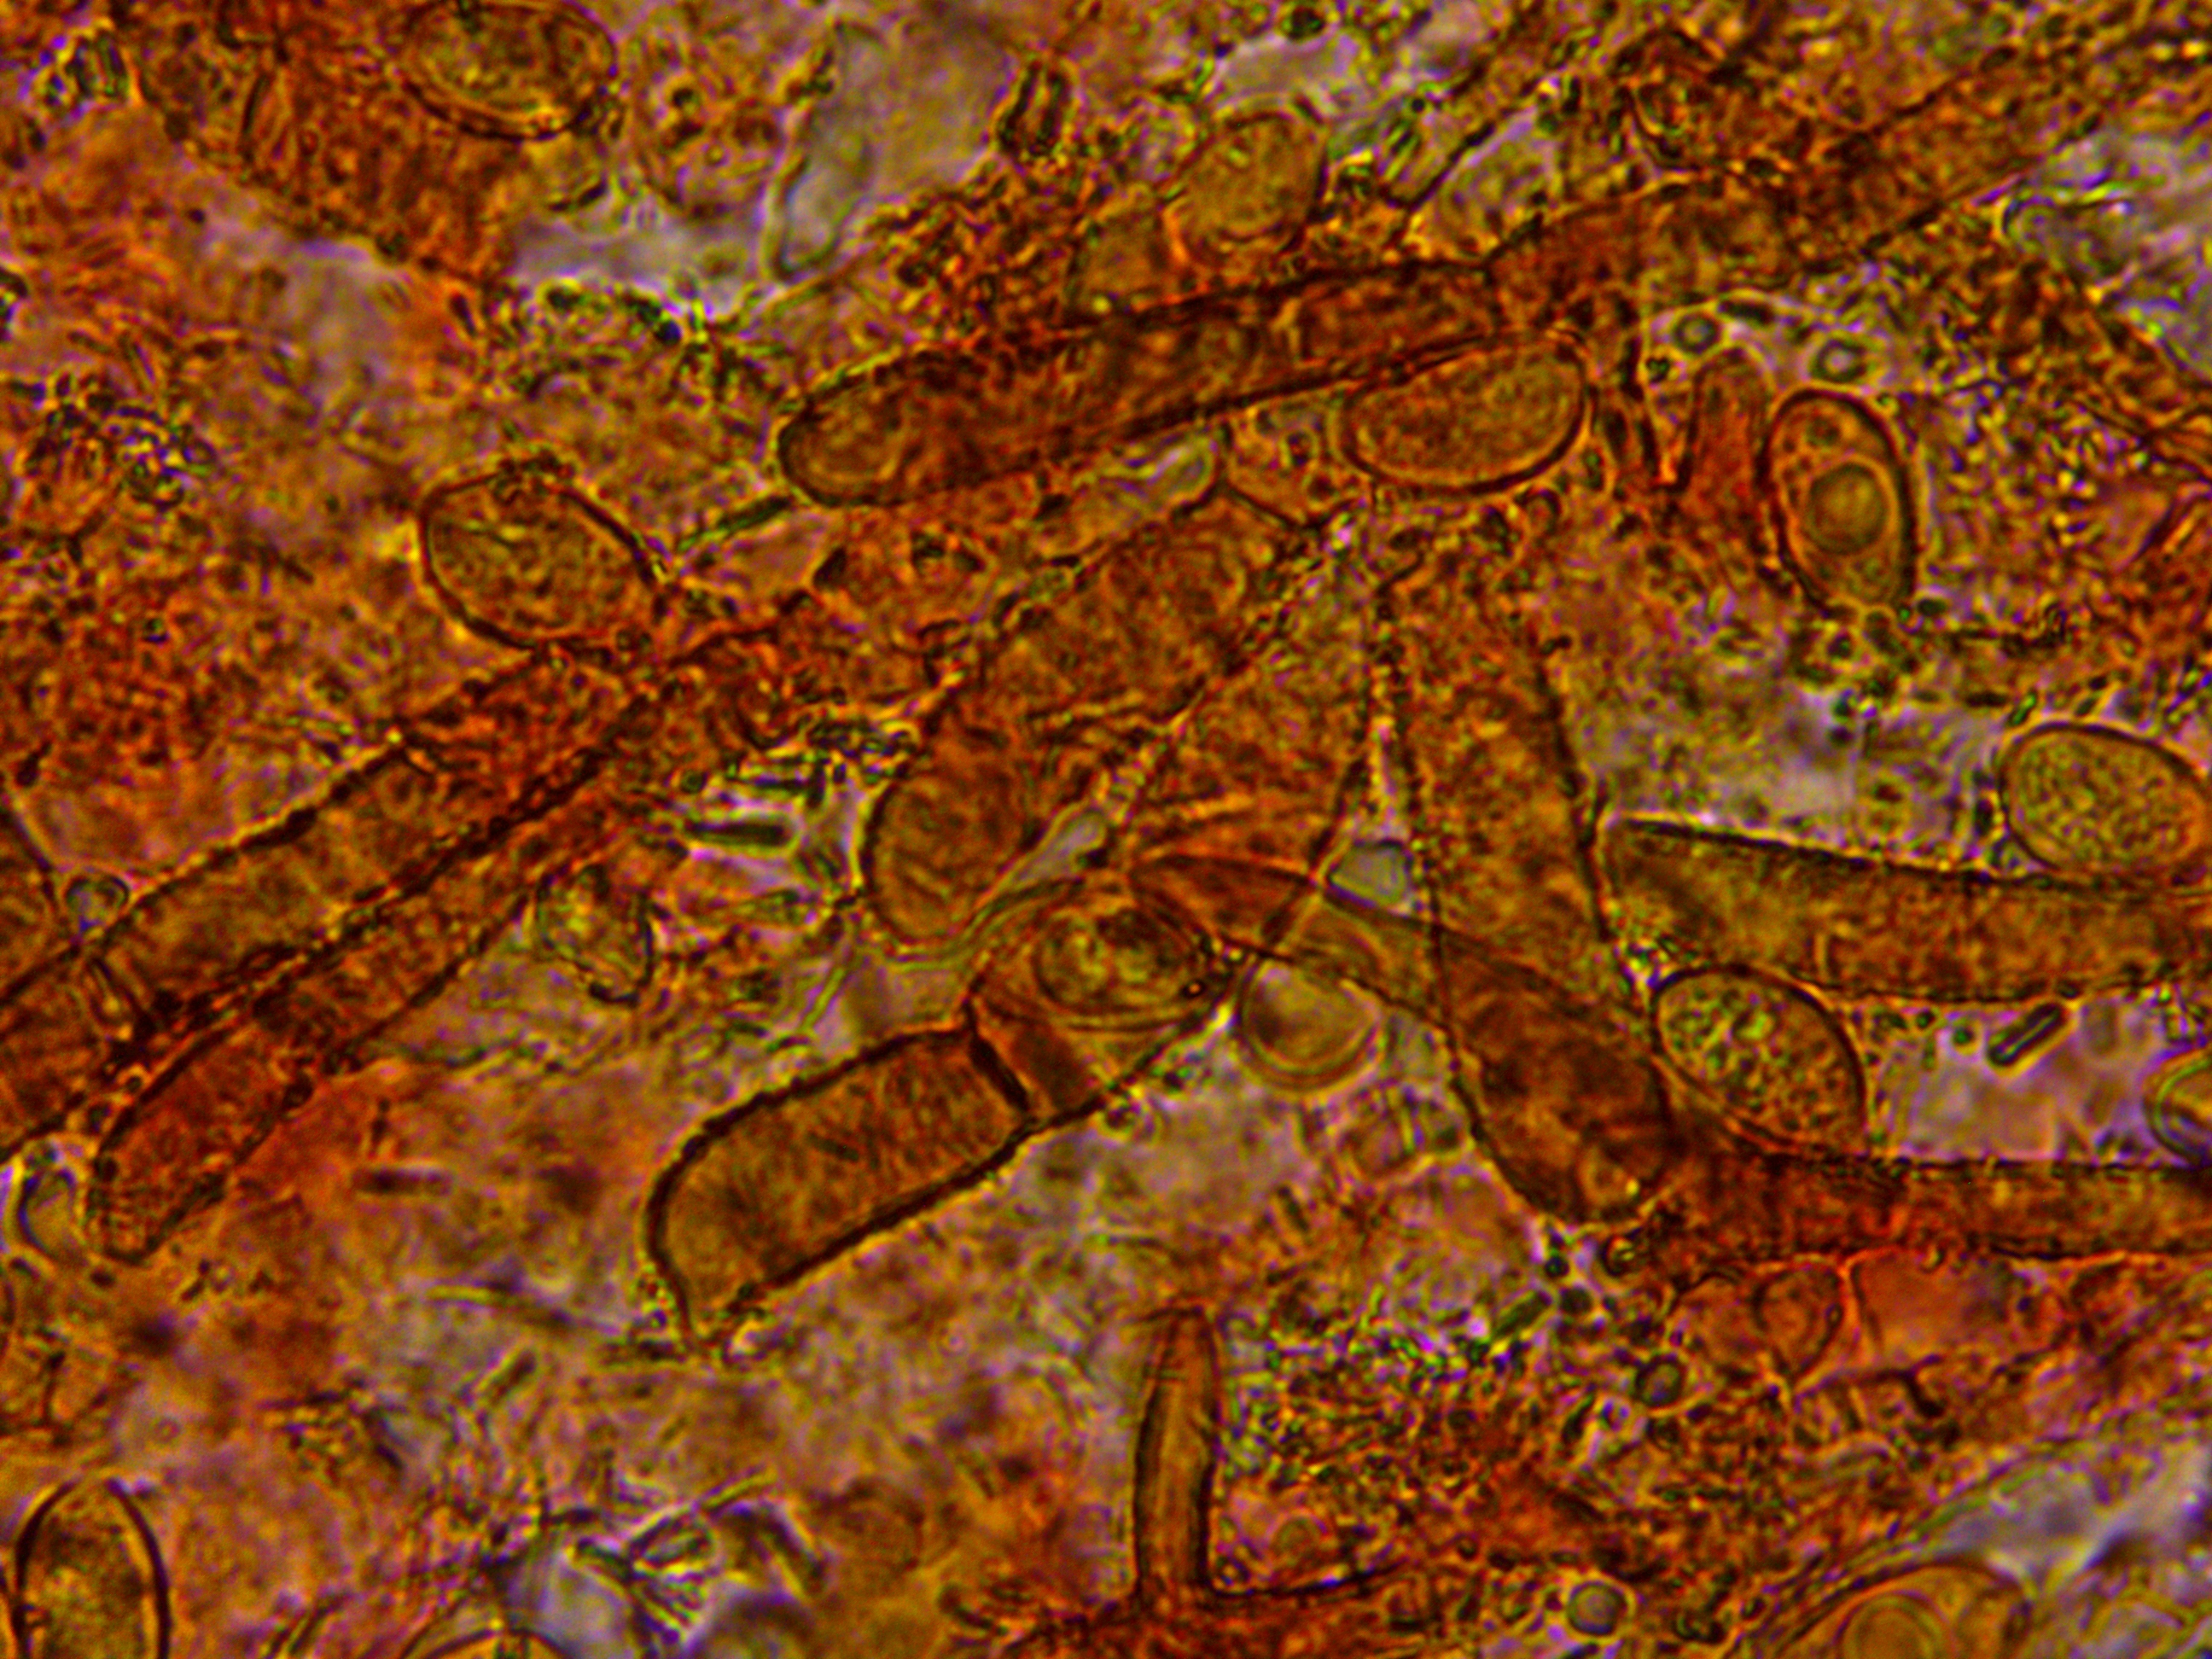 Phaeomarasmius rimulincola Huthaut Zellen inkrustiert Portugal Algarve Loule Borke Eiche Quercus ilex